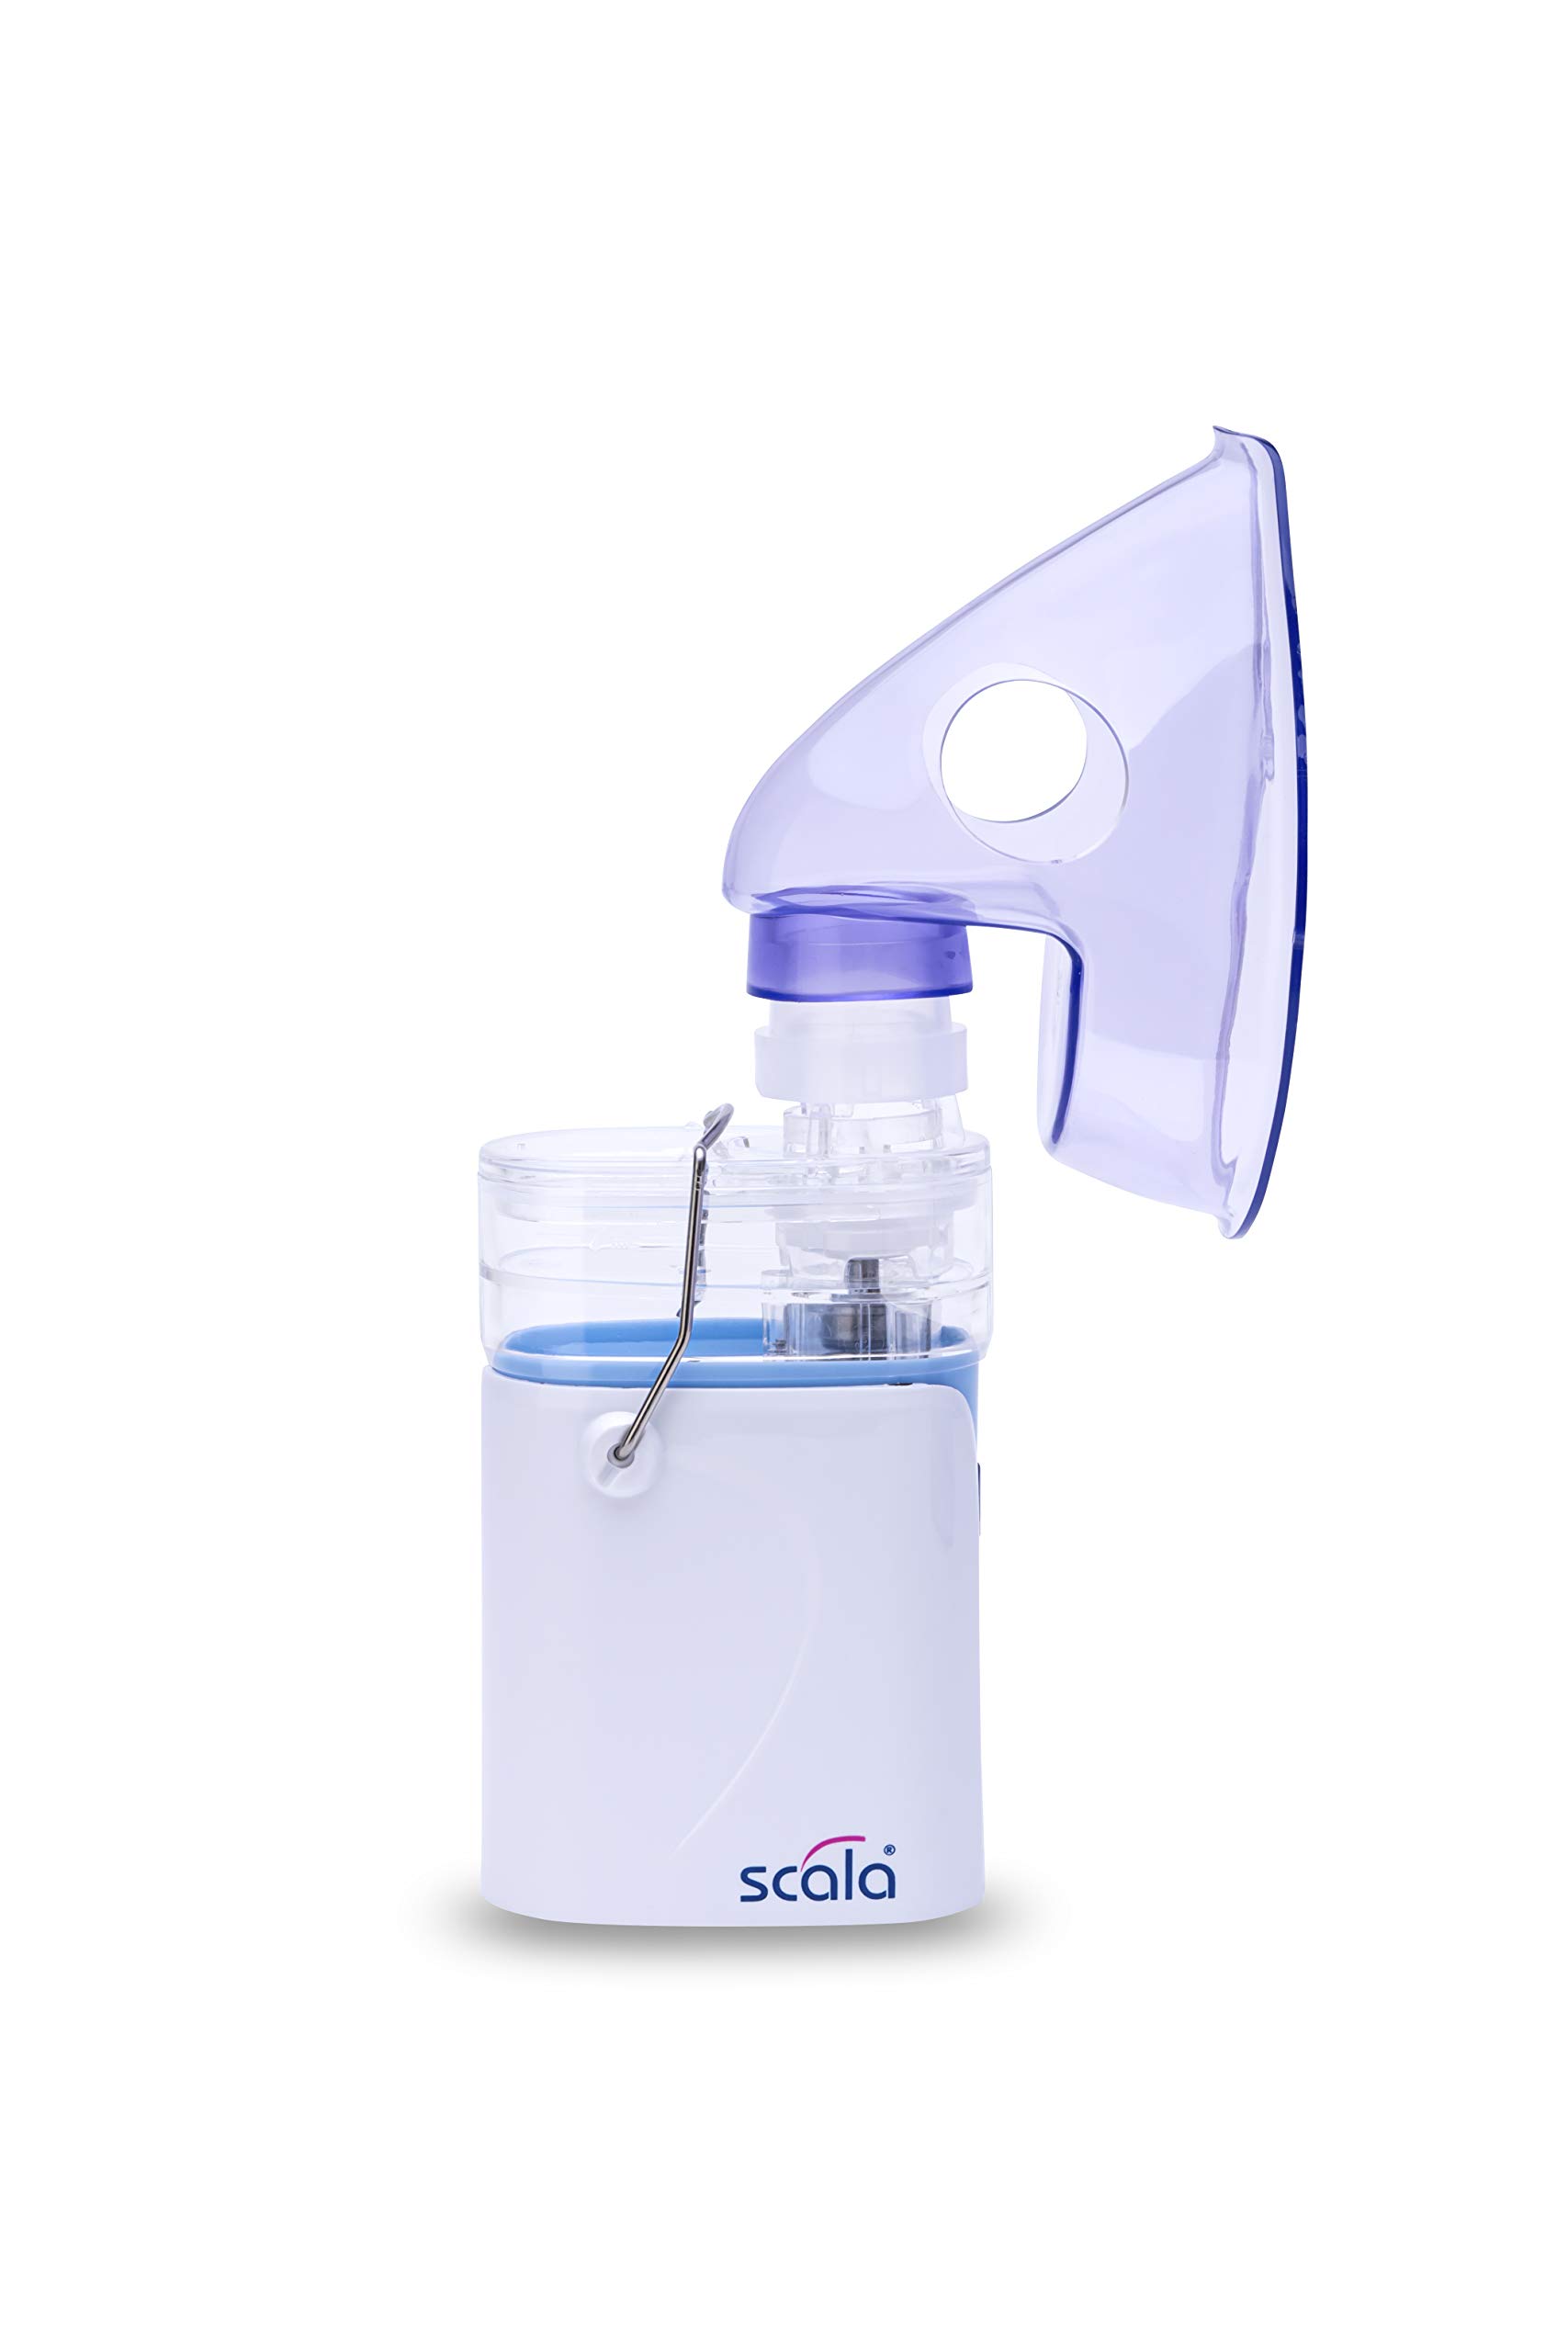 scala SC 350 Ultraschall Inhalationsgerät weiß